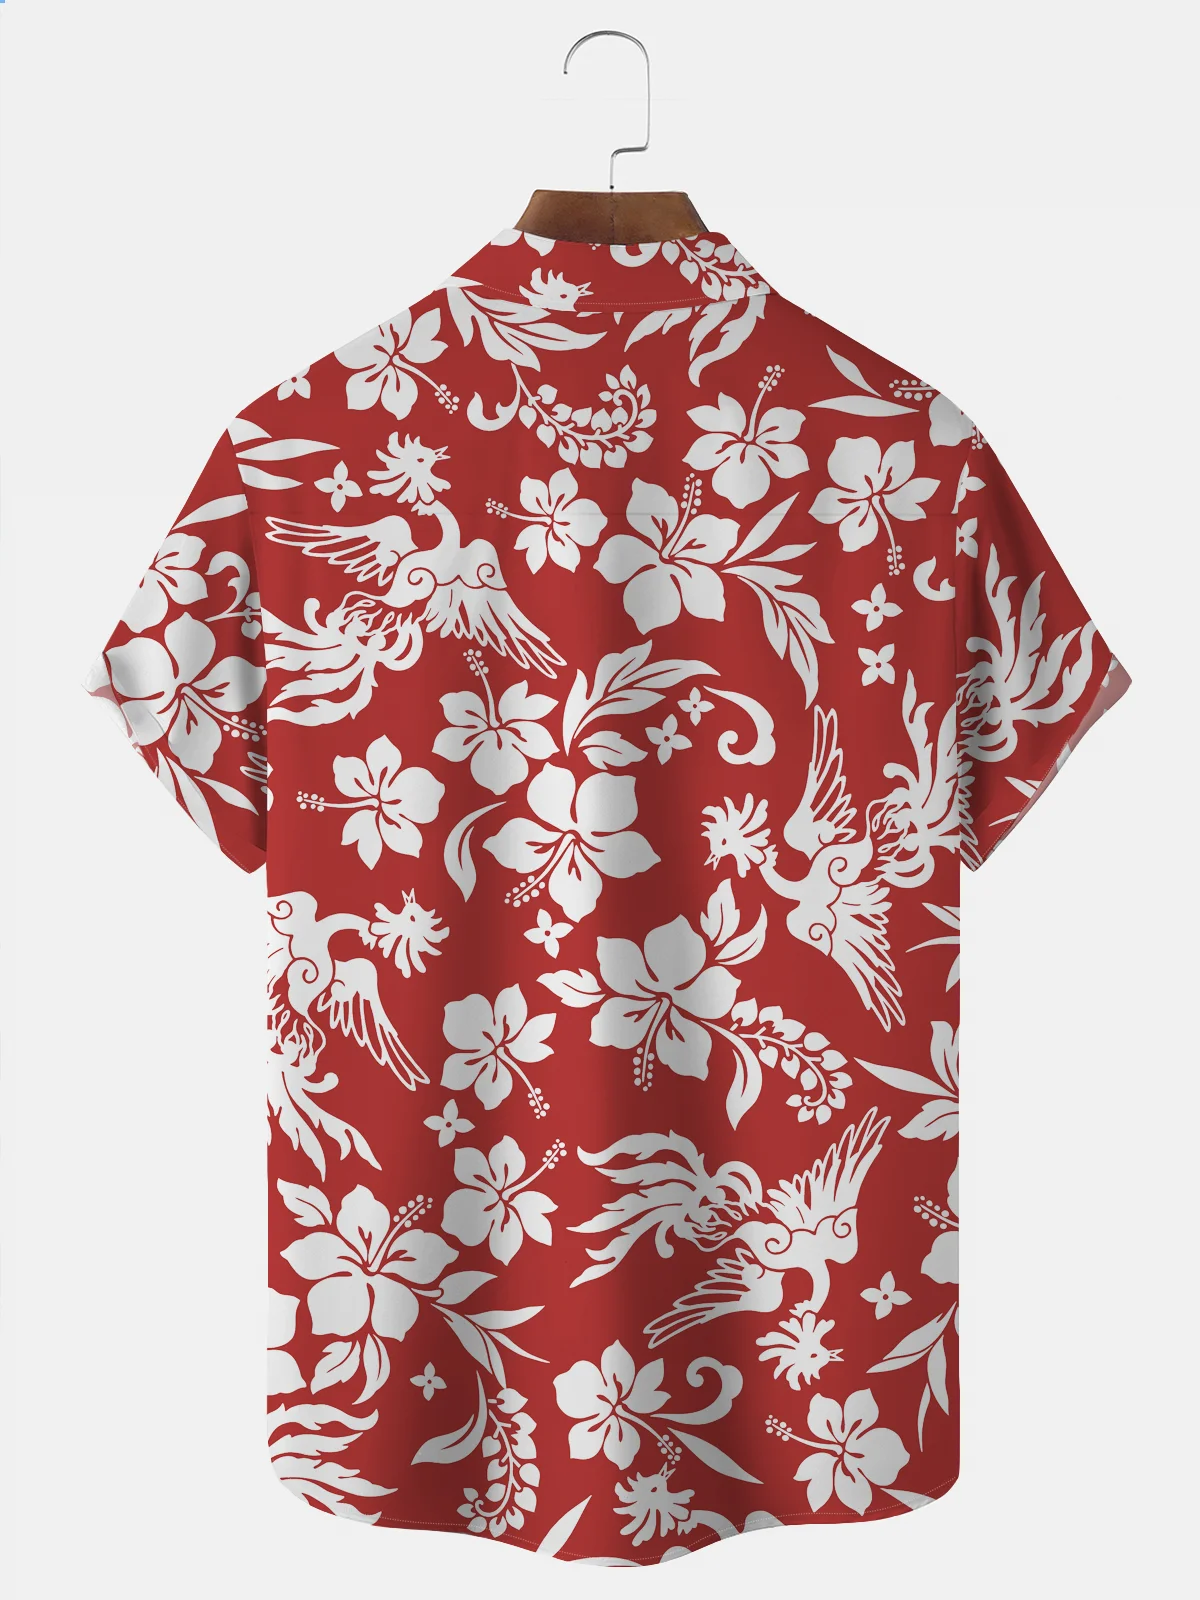 Royaura Natural Fiber Vintage Red Coconut Tree Hawaiian Oversized Aloha Shirt